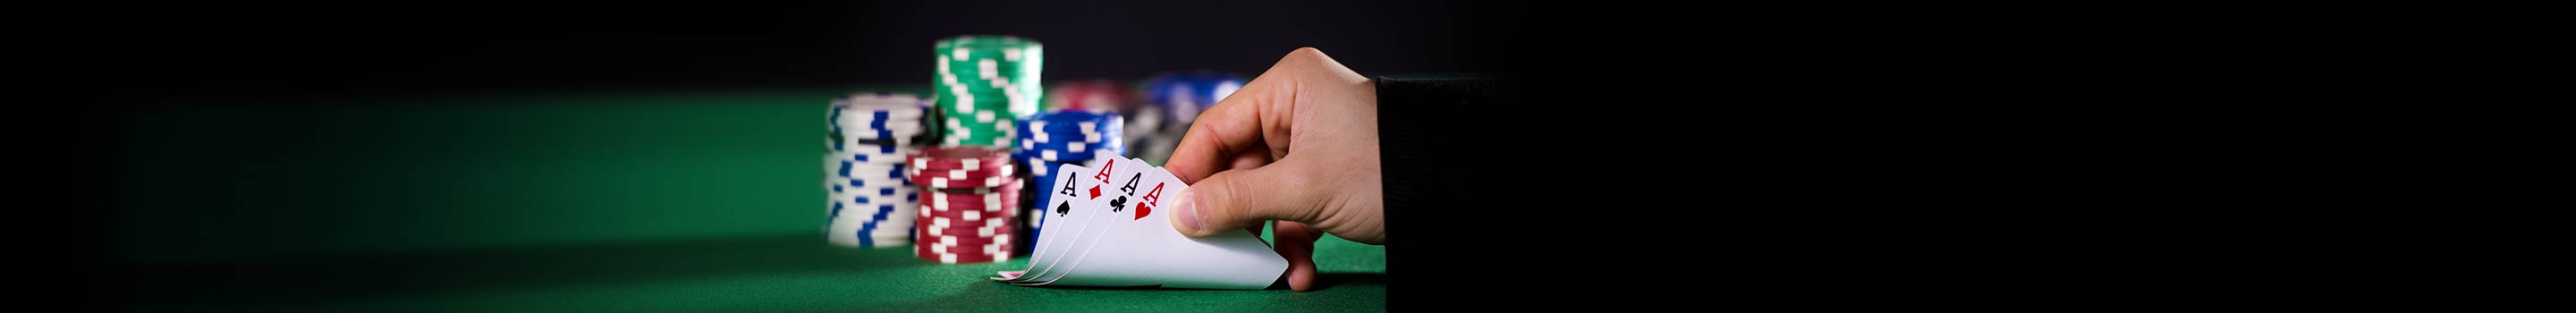 Die häufigsten Fehler beim Pokerspiel